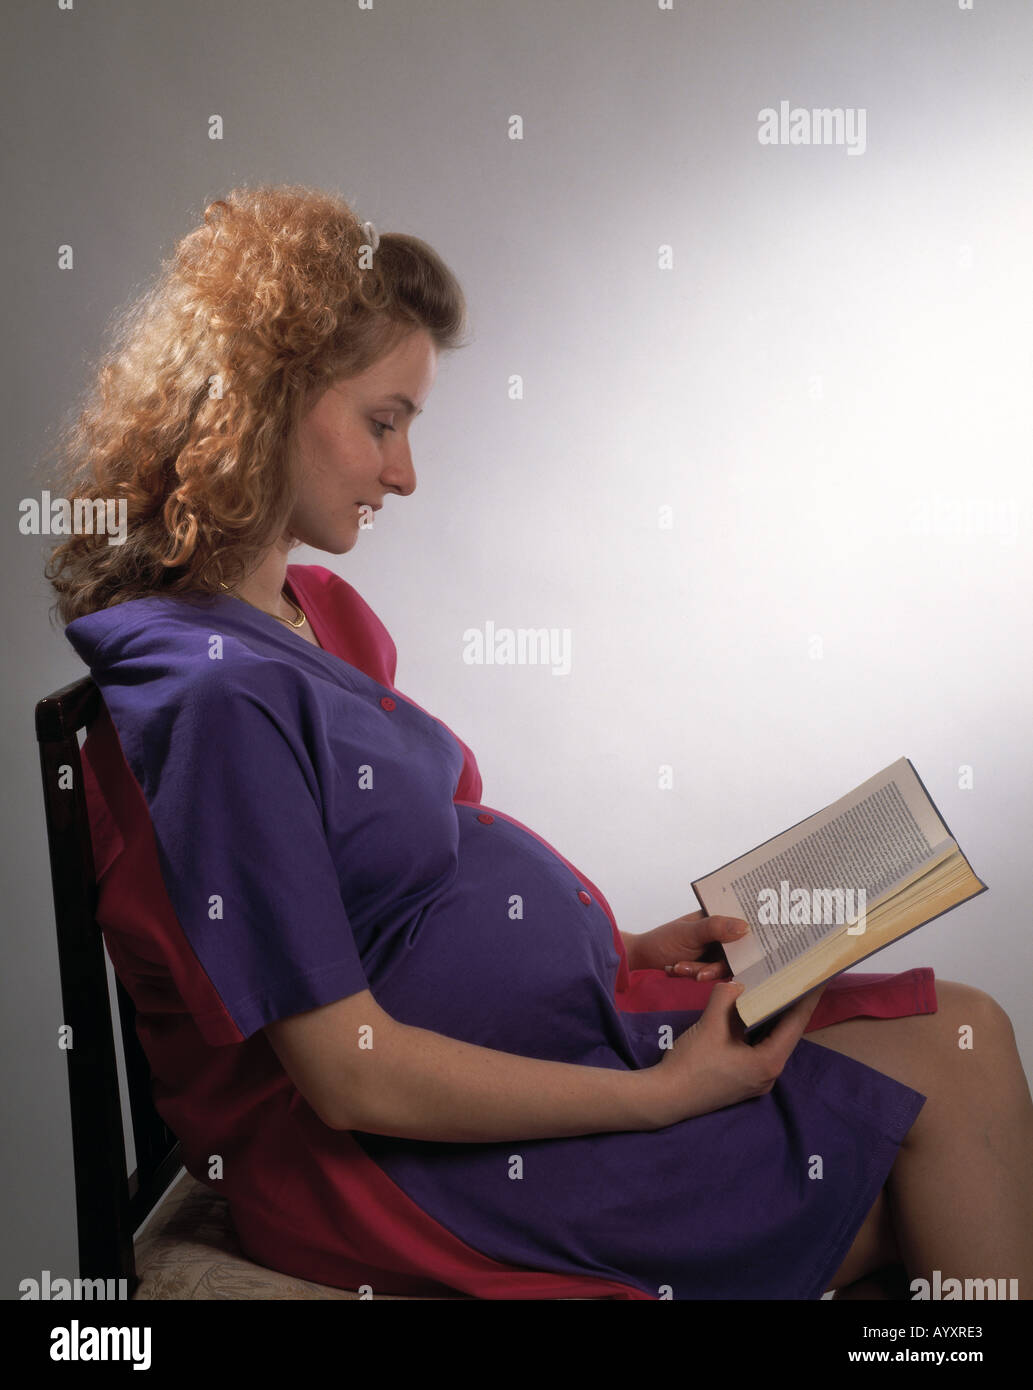 junge Mädchen, junge Frau, 20, 25 Jahre, Porträt, braun, brünett, lange Haare, auf einem Stuhl sitzend lesen ein Buch, lesen, Leser, schwanger, Schwangere, weit fortgeschritten in der Schwangerschaft, Schwangerschaft, nachdenklich, Schwermut, nachdenklich, gedankenverloren, denken, denken Stockfoto